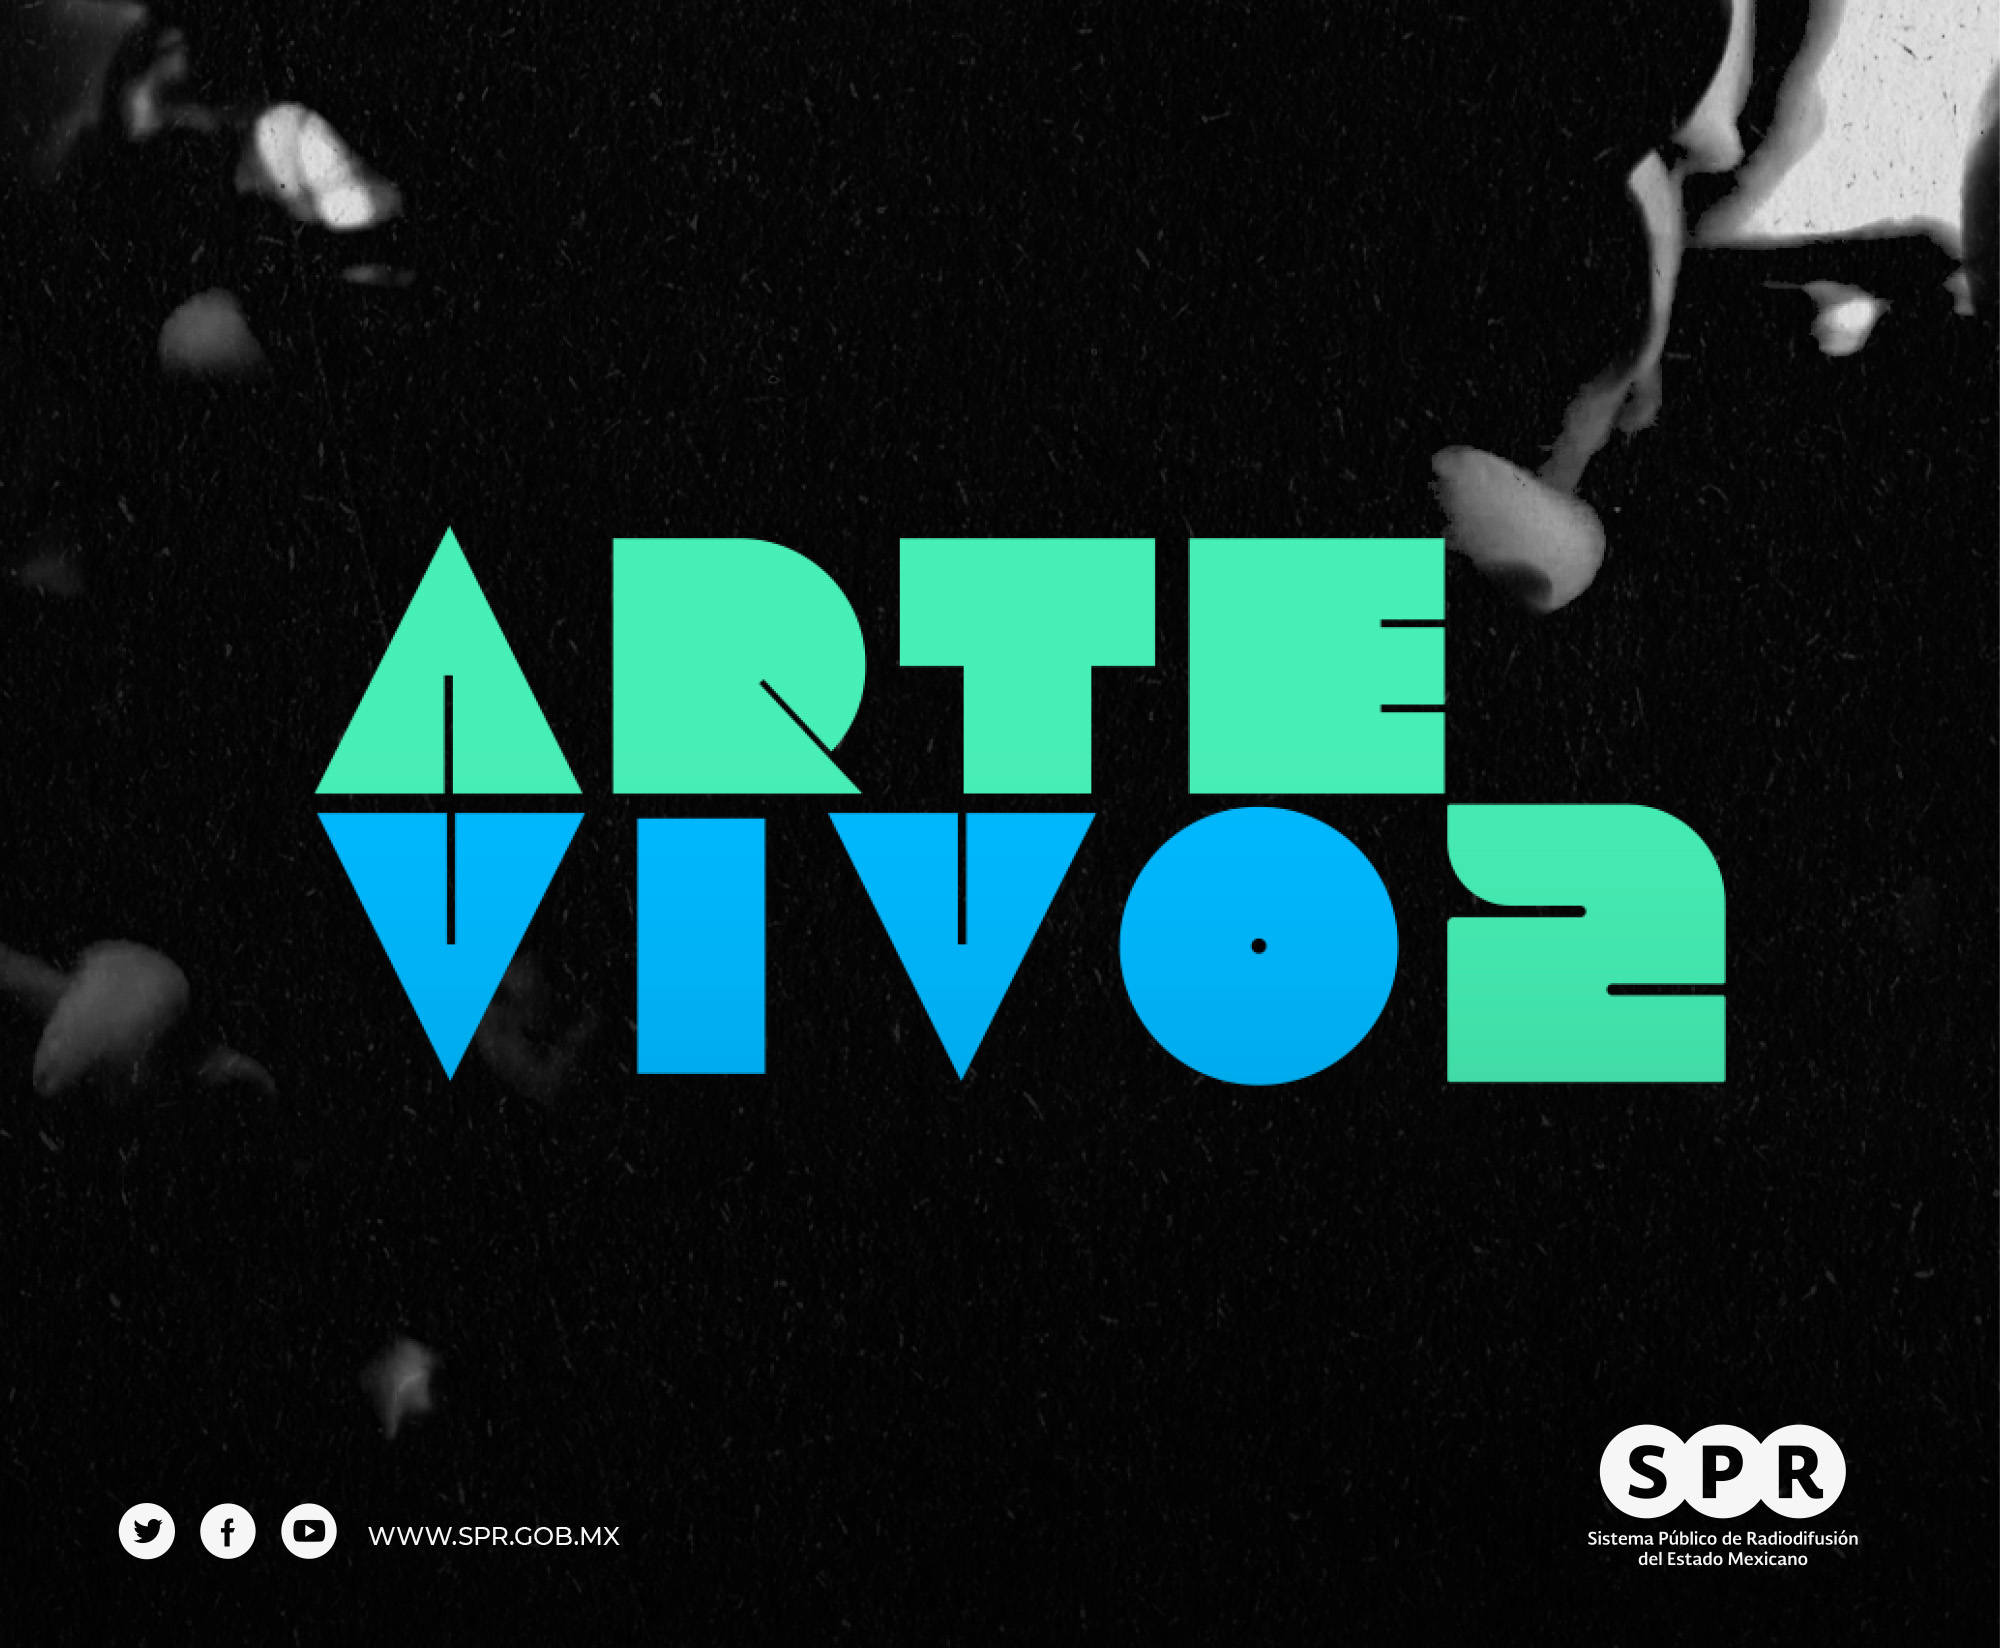 Canal Catorce del SPR estrena la segunda temporada de la serie “Arte vivo”